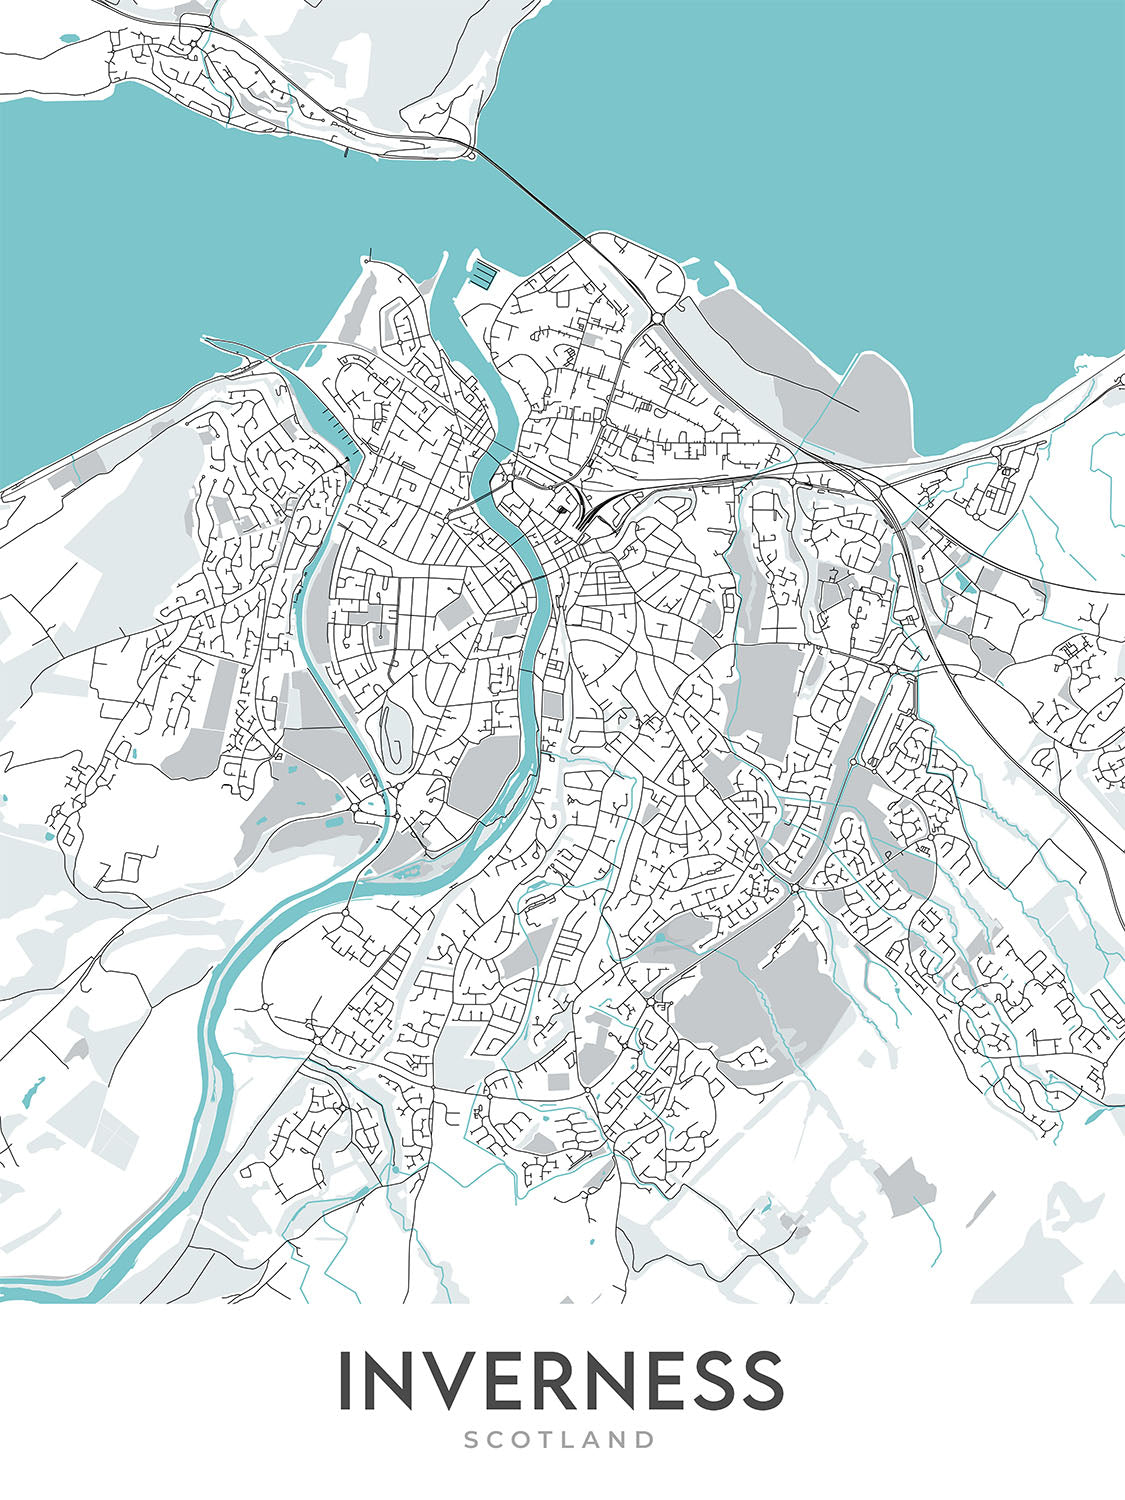 Mapa moderno de la ciudad de Inverness, Escocia: centro de la ciudad, río Ness, A82, castillo de Inverness, islas Ness